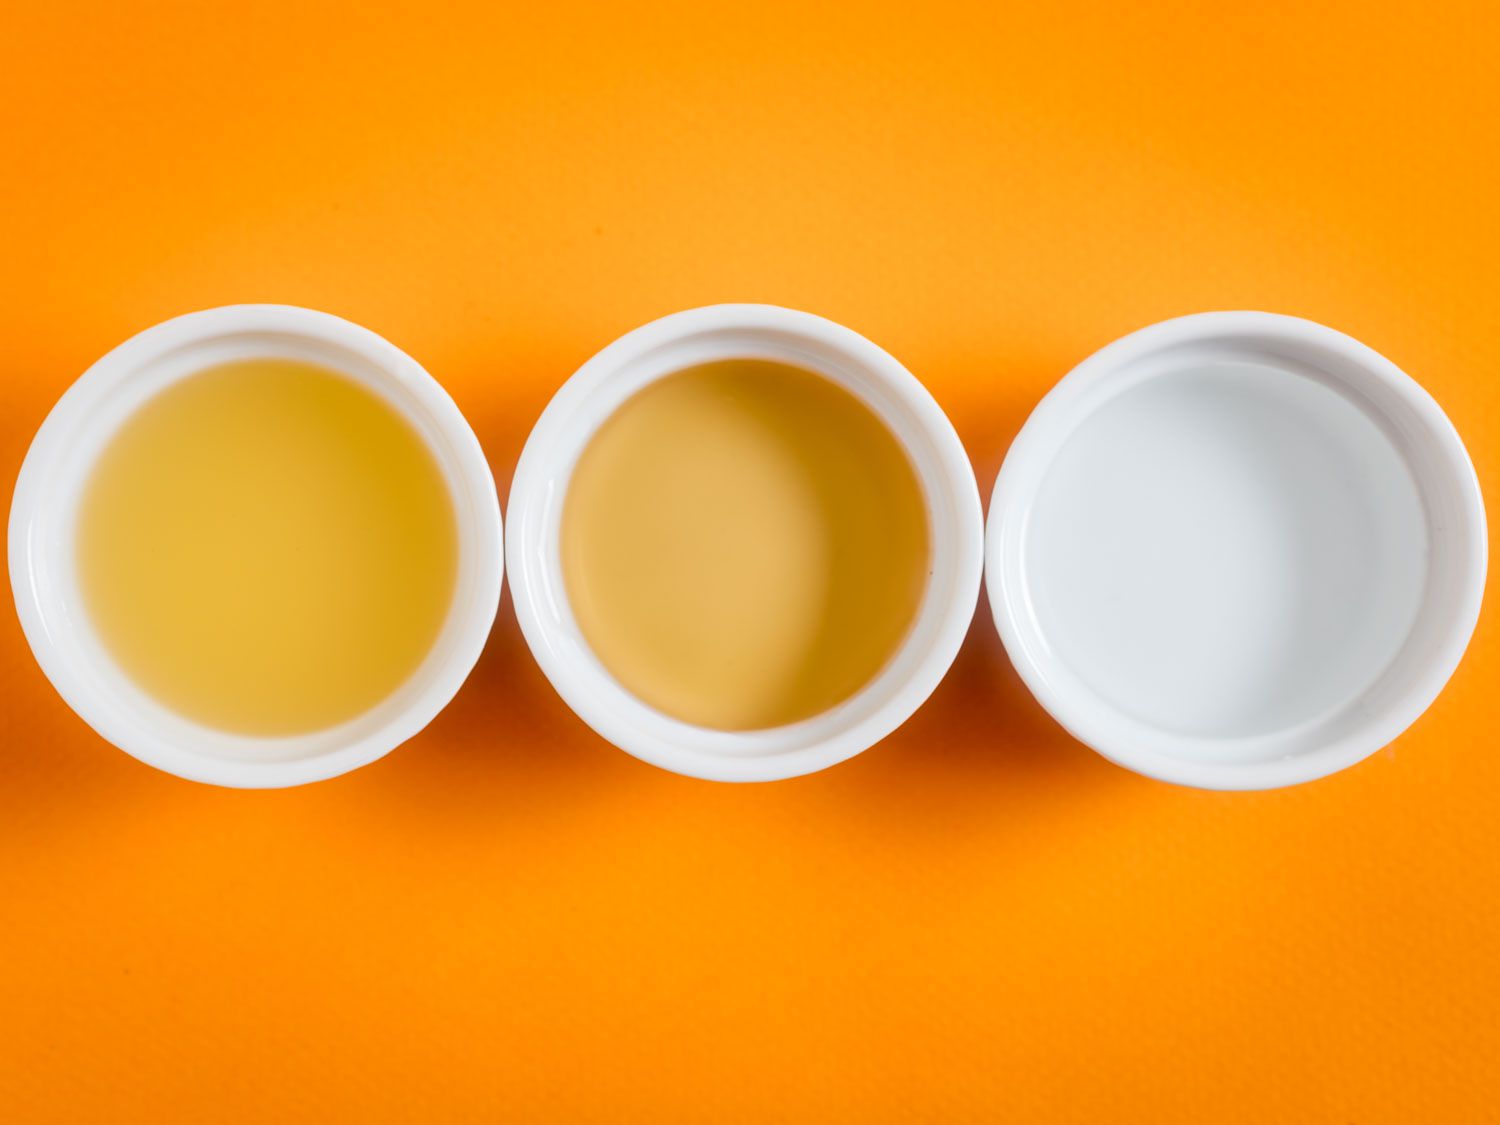 头顶上的三种不同醋的白色杯子，以橙色为背景